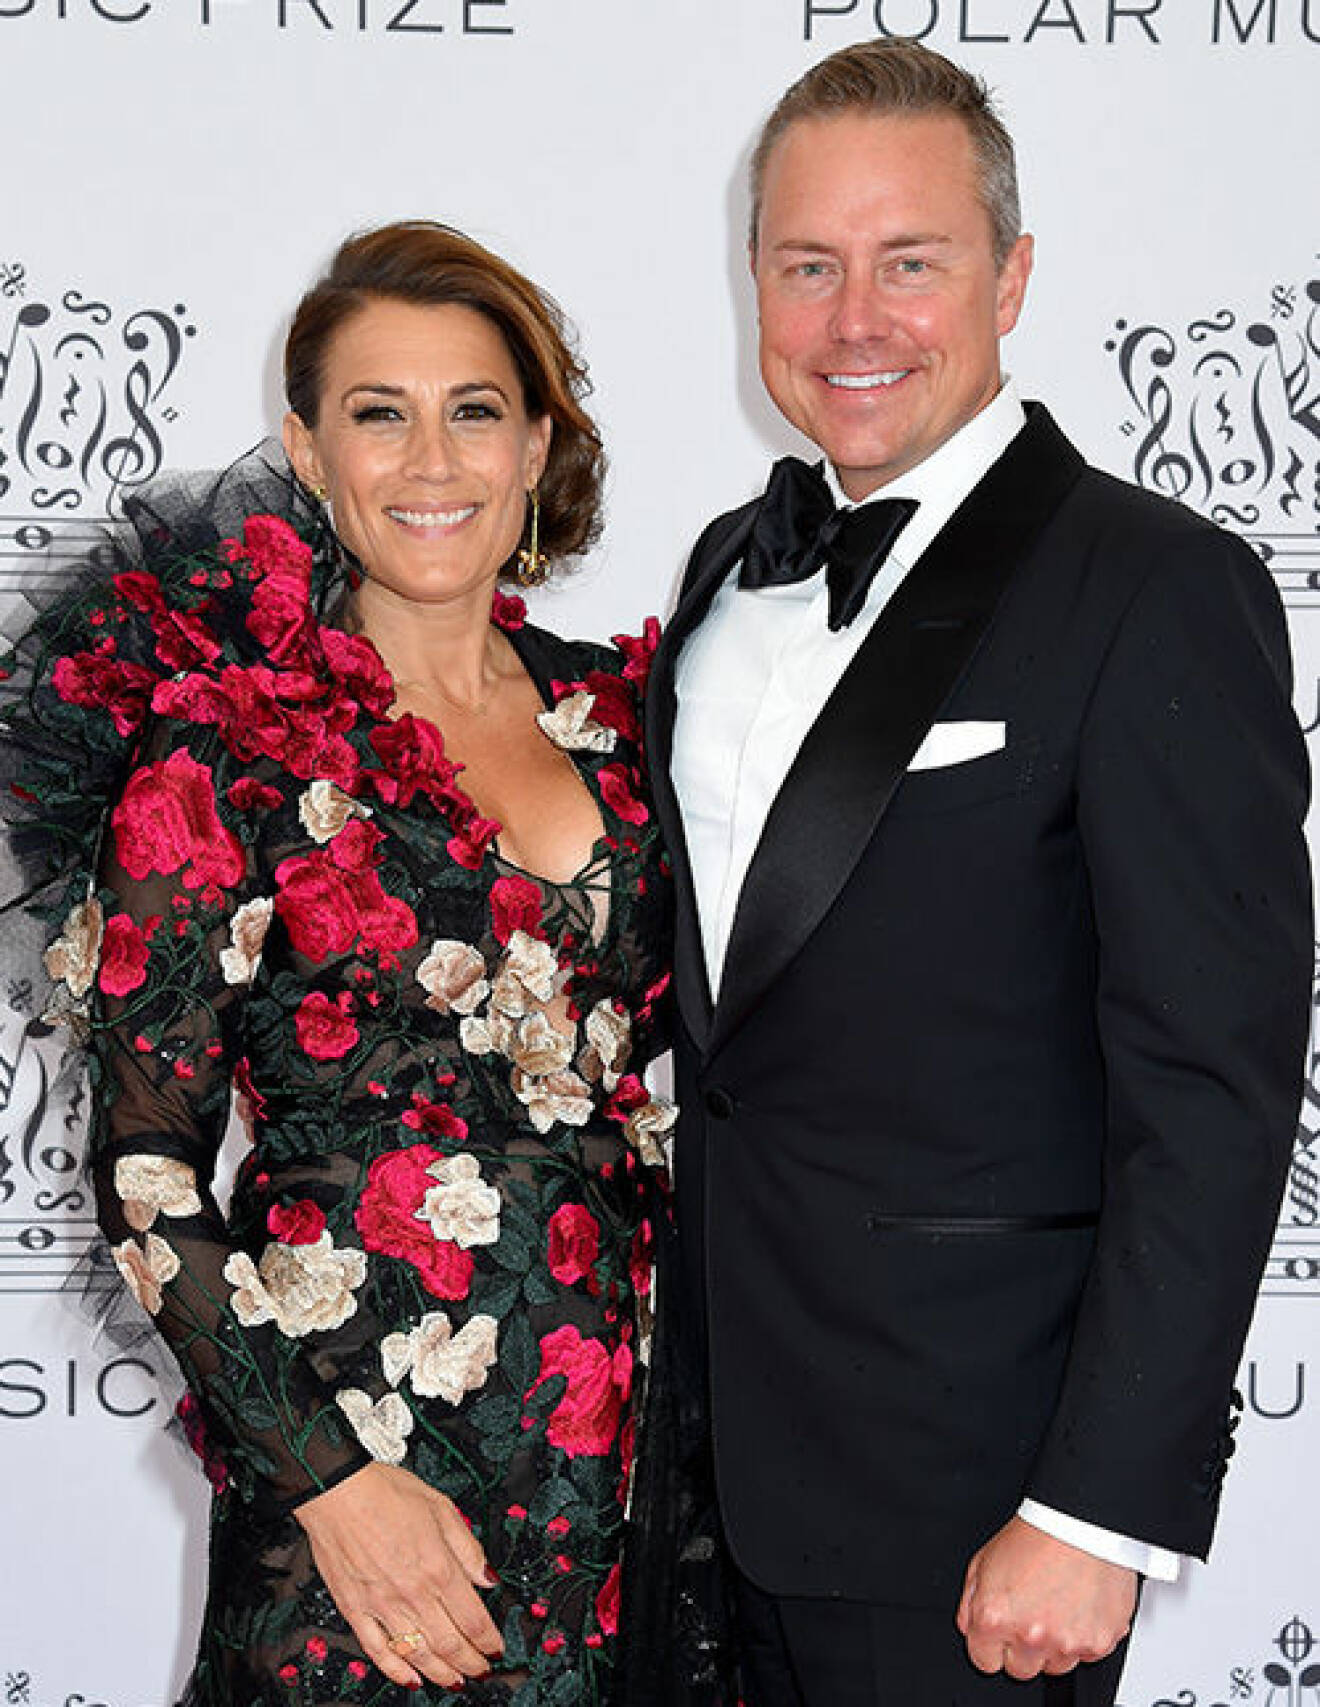 Jill Johnson tillsammans med pojkvännen Mattias Elg på Polarpriset 2019.